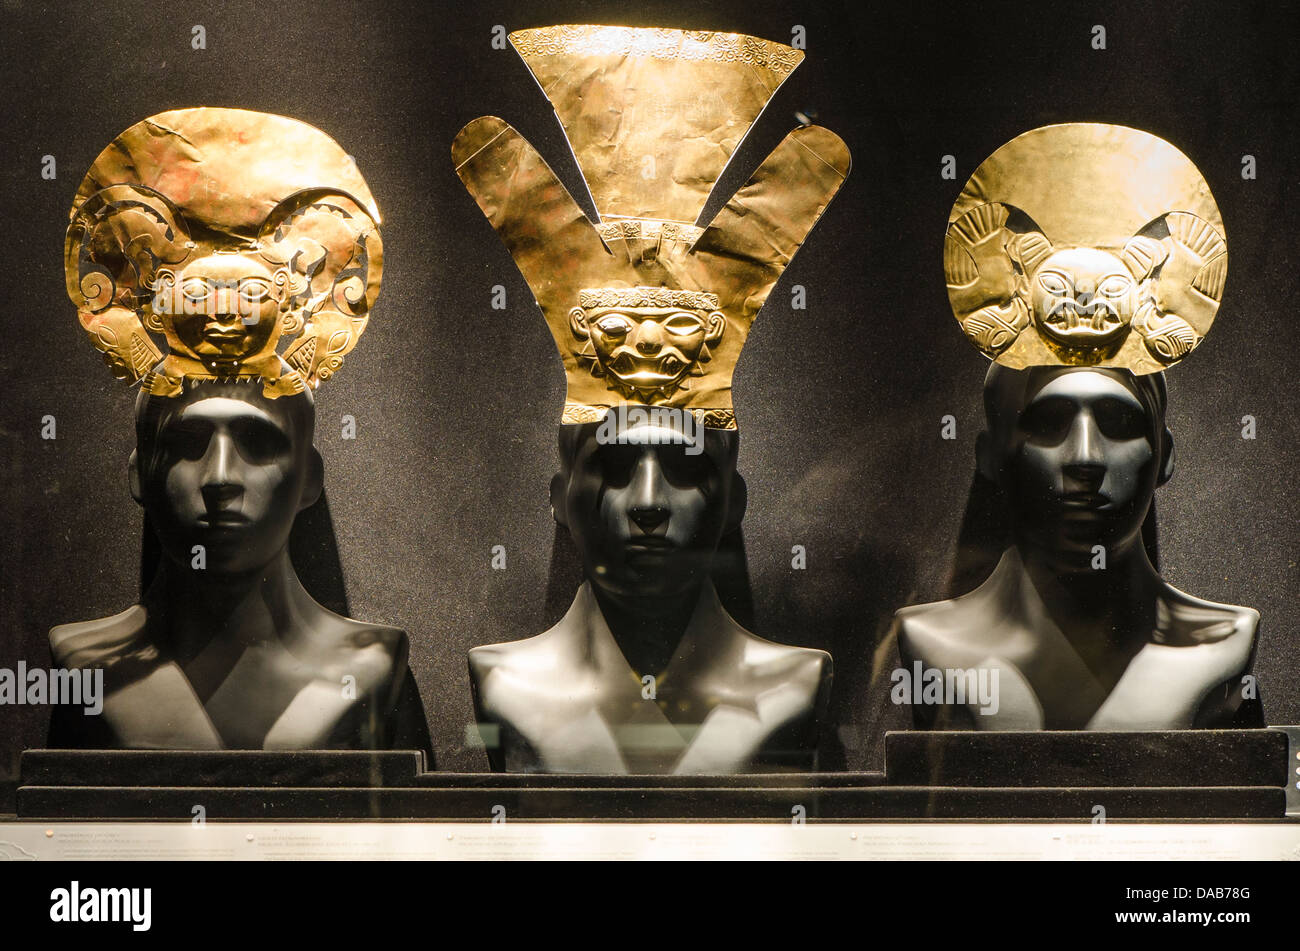 Ornement ornement d'or pré-colombien inca têtes adresse objets archéologiques art art art Larco Museum, Lima, Pérou. Banque D'Images